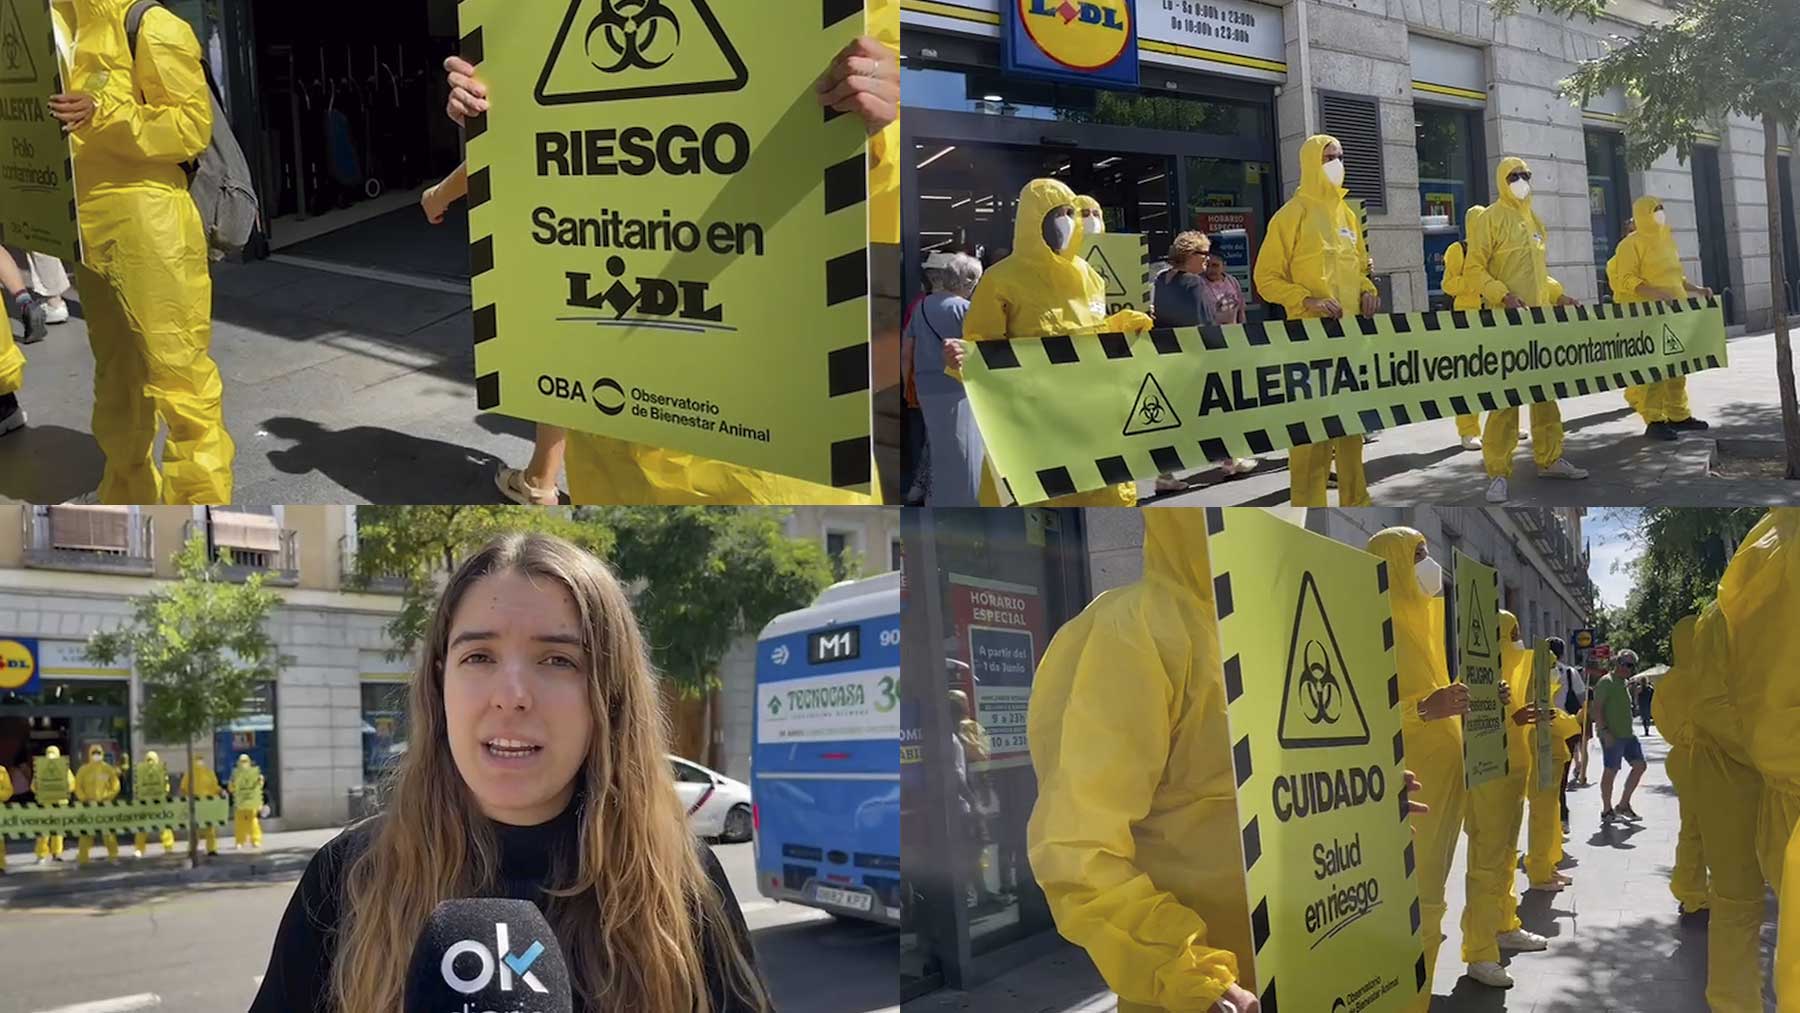 Acción del Observatorio de Bienestar Animal en Madrid alertando de la venta de pollo contaminado de los supermercados Lidl